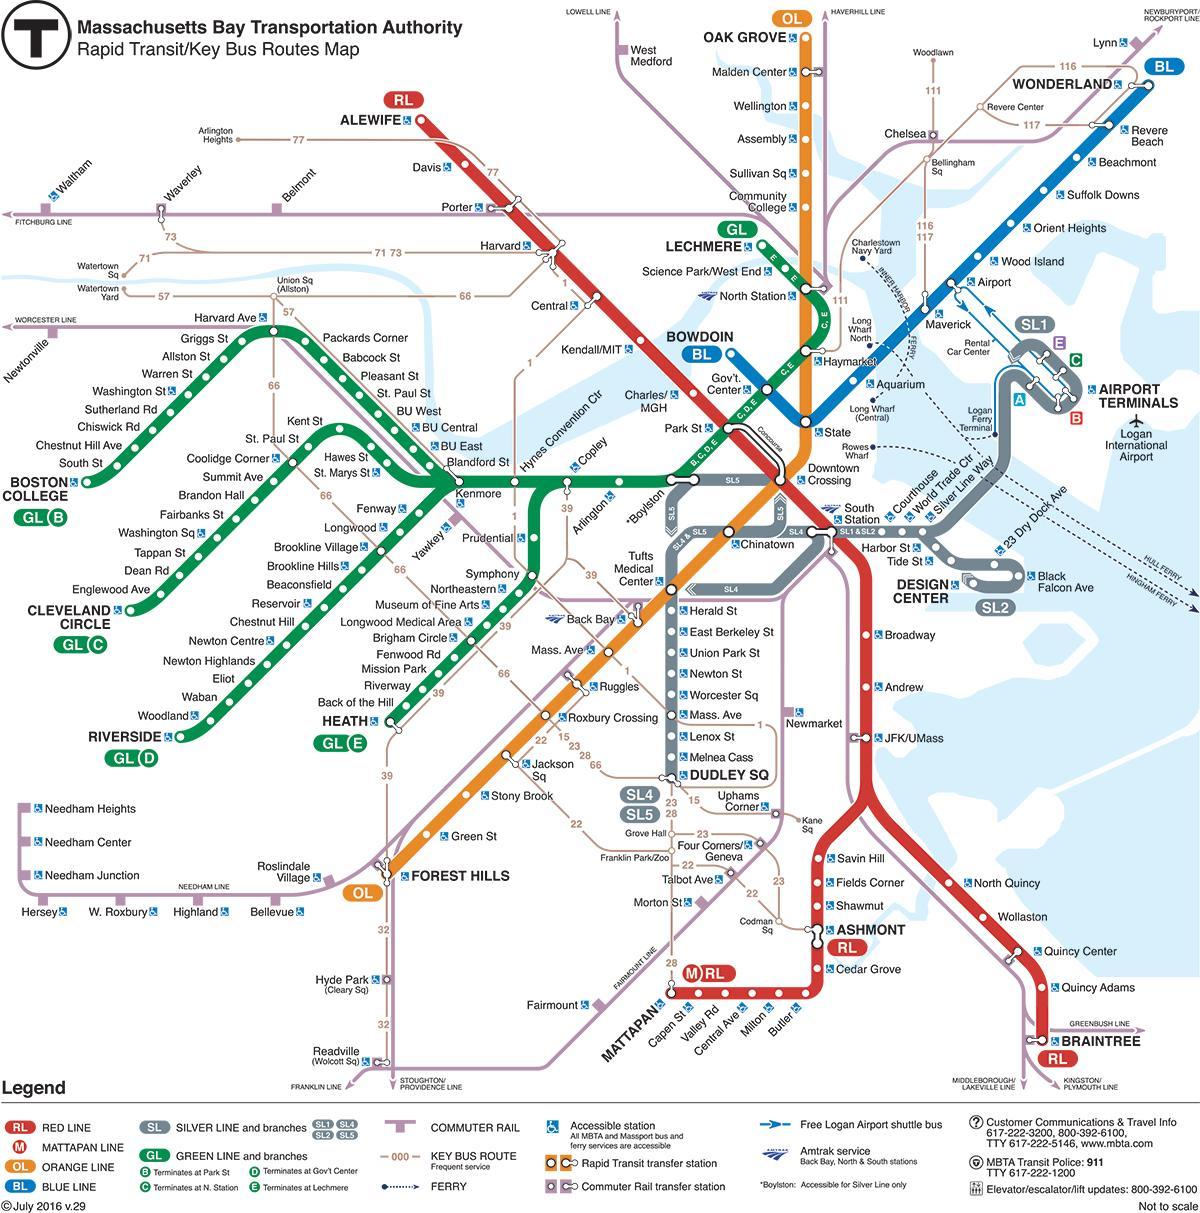 สีเขียวบนเส้นบนแผนที่บอสตัน